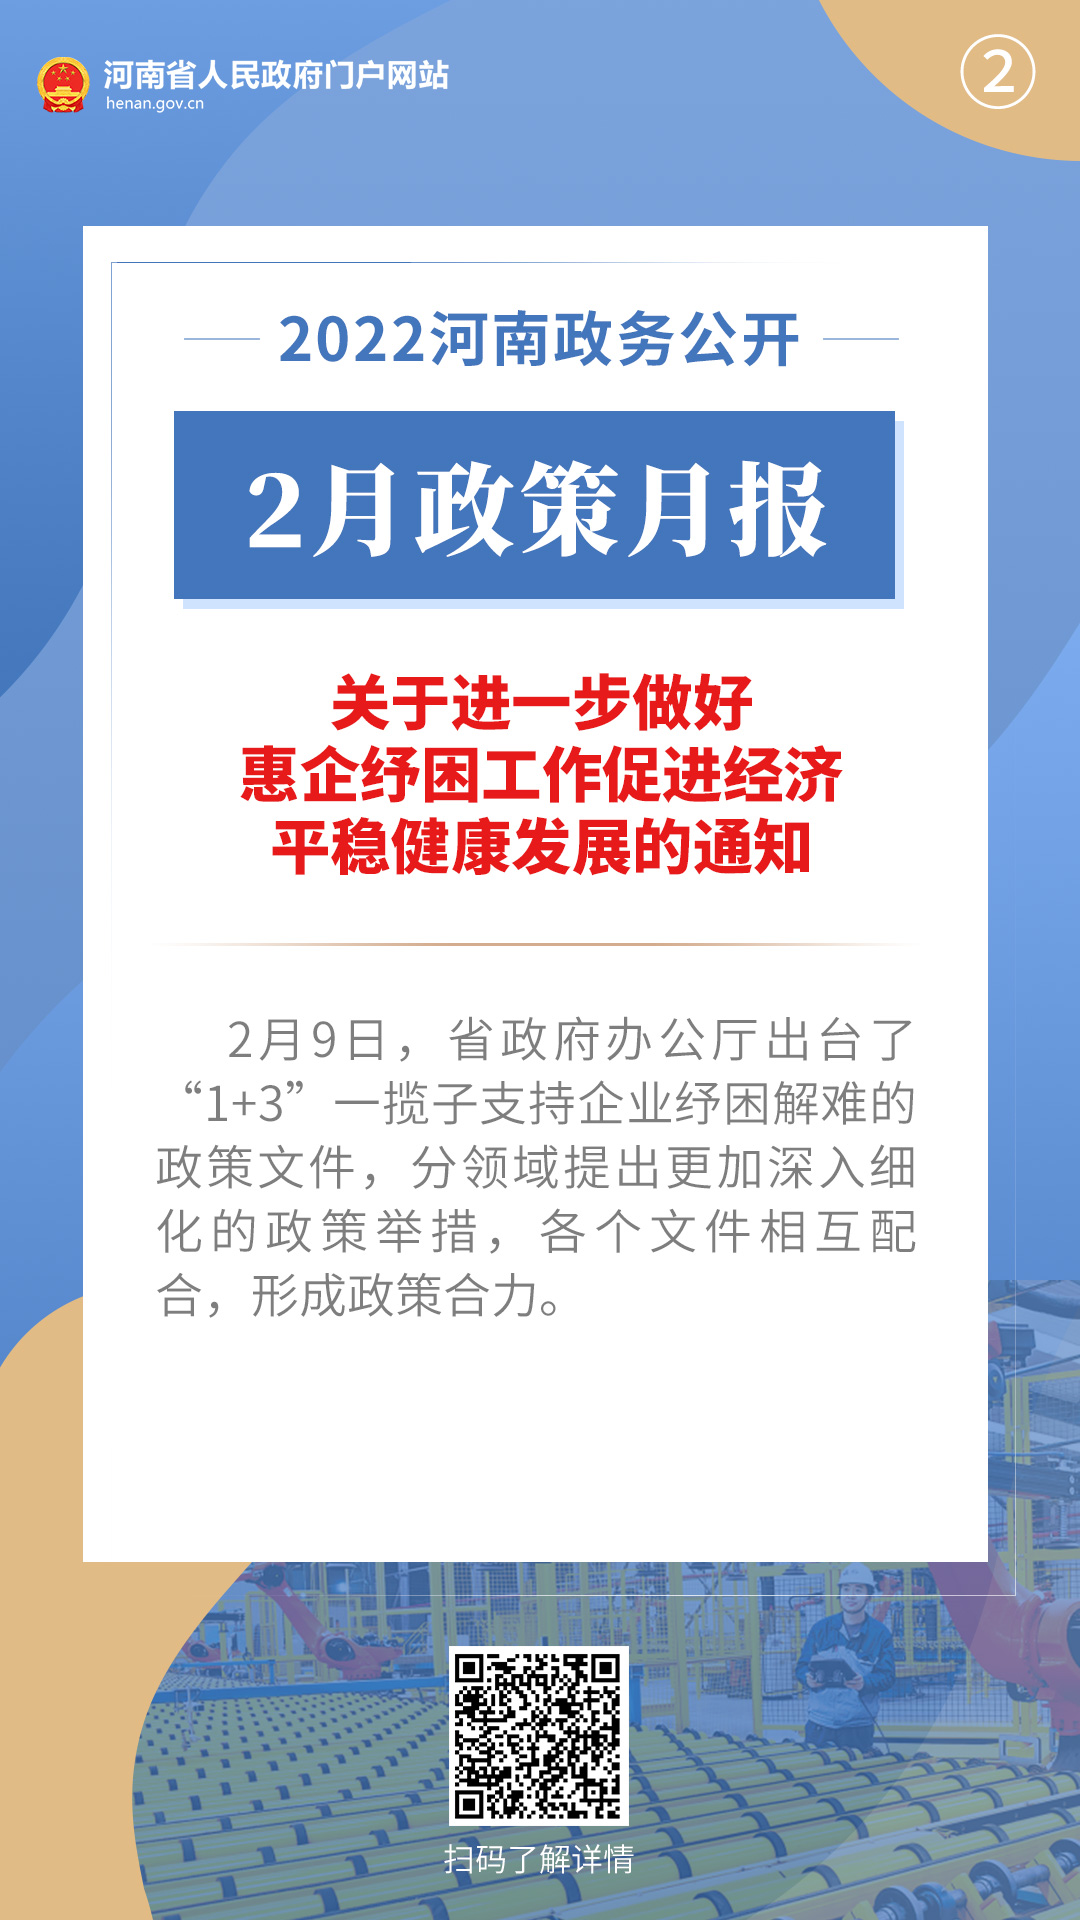 2022年2月，河南省政府出台了这些重要政策